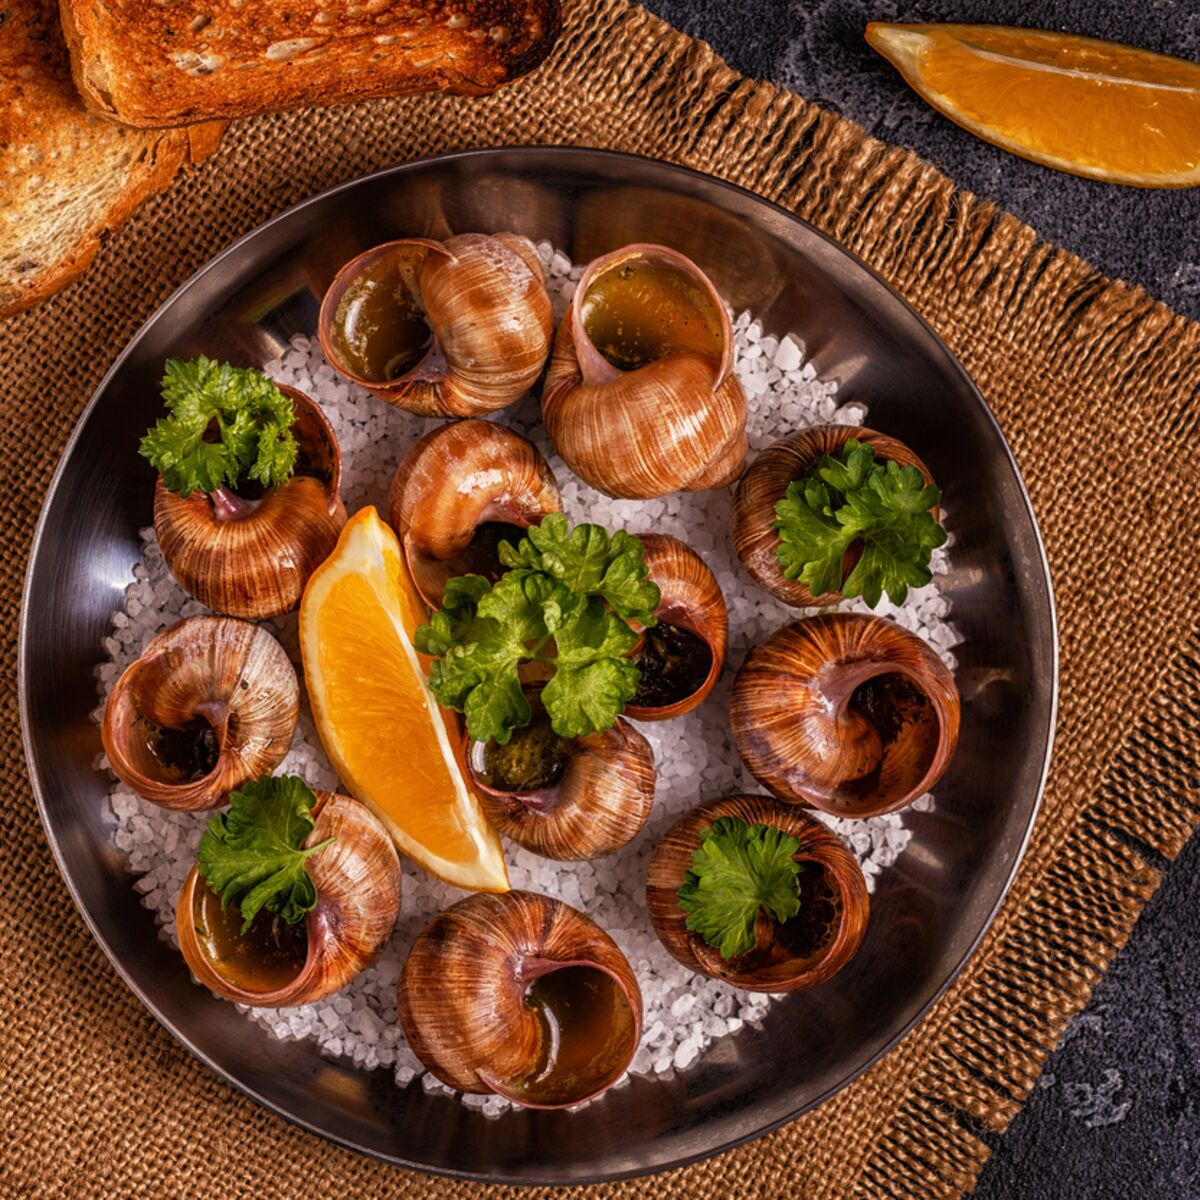 Escargots de Bourgogne : Recette de Escargots de Bourgogne